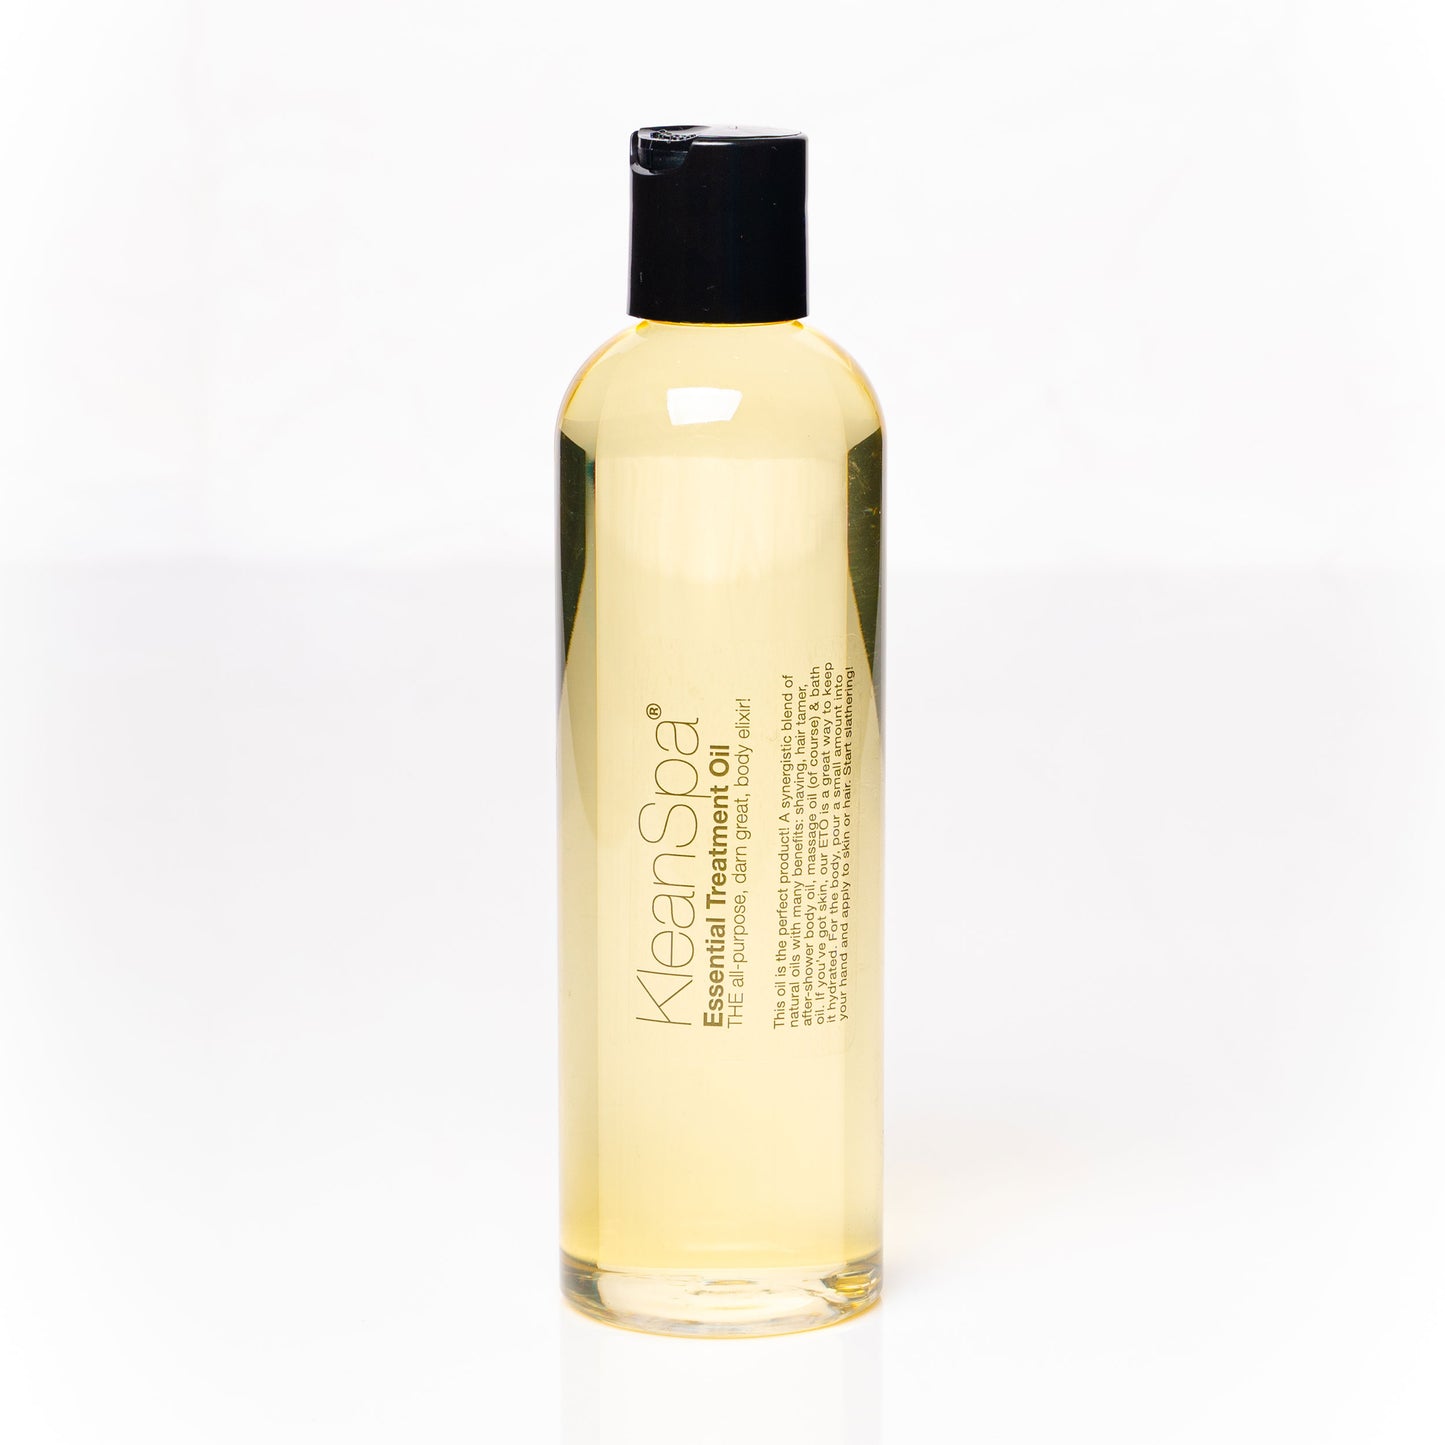 medium bottle of custom scented body oil